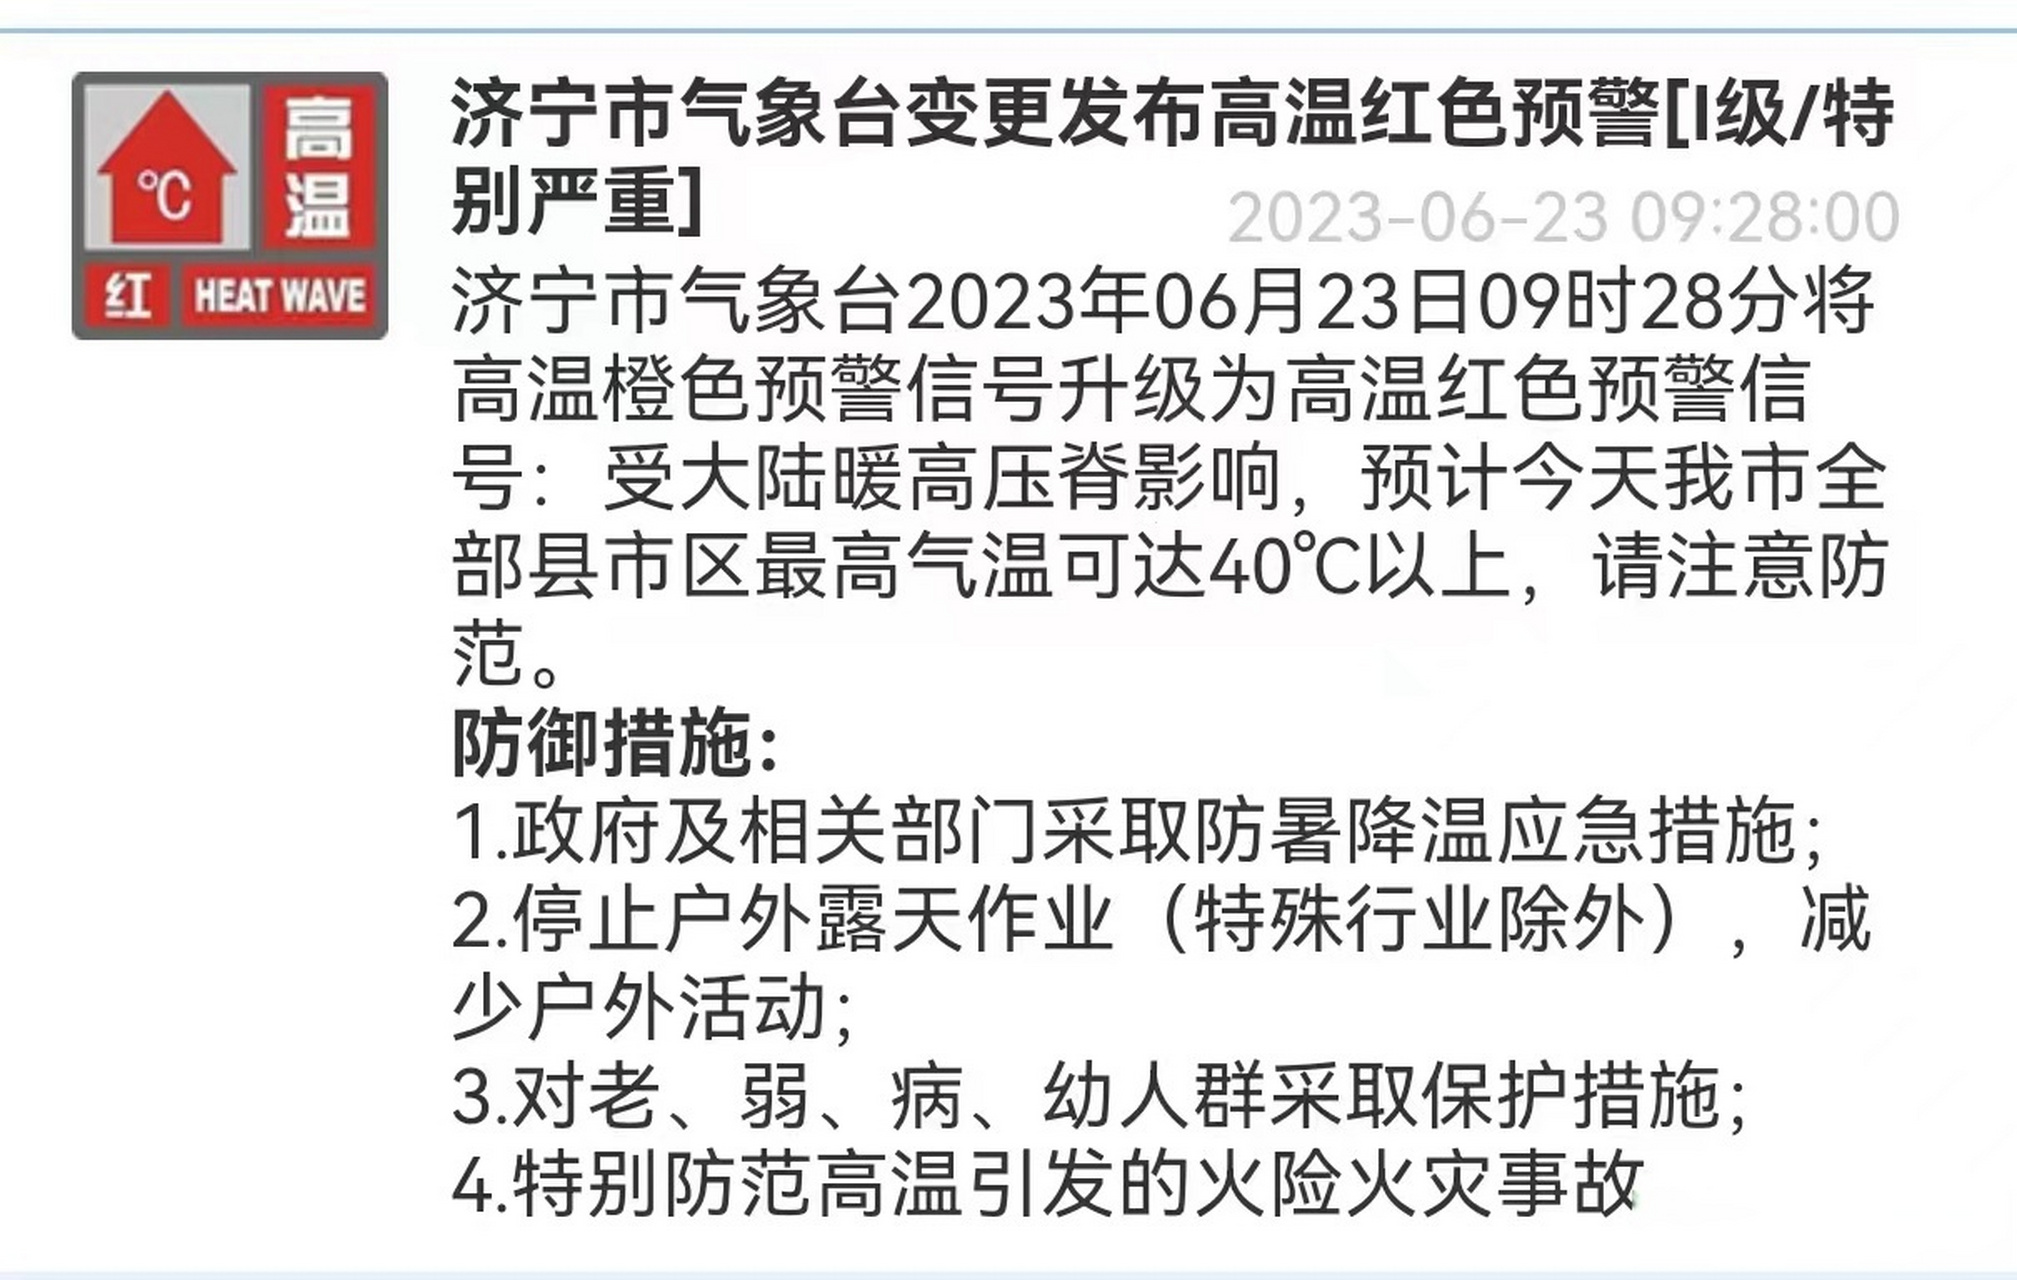 济宁气象预警信息 济宁市气象台2023年06月23日09时28分将高温橙色